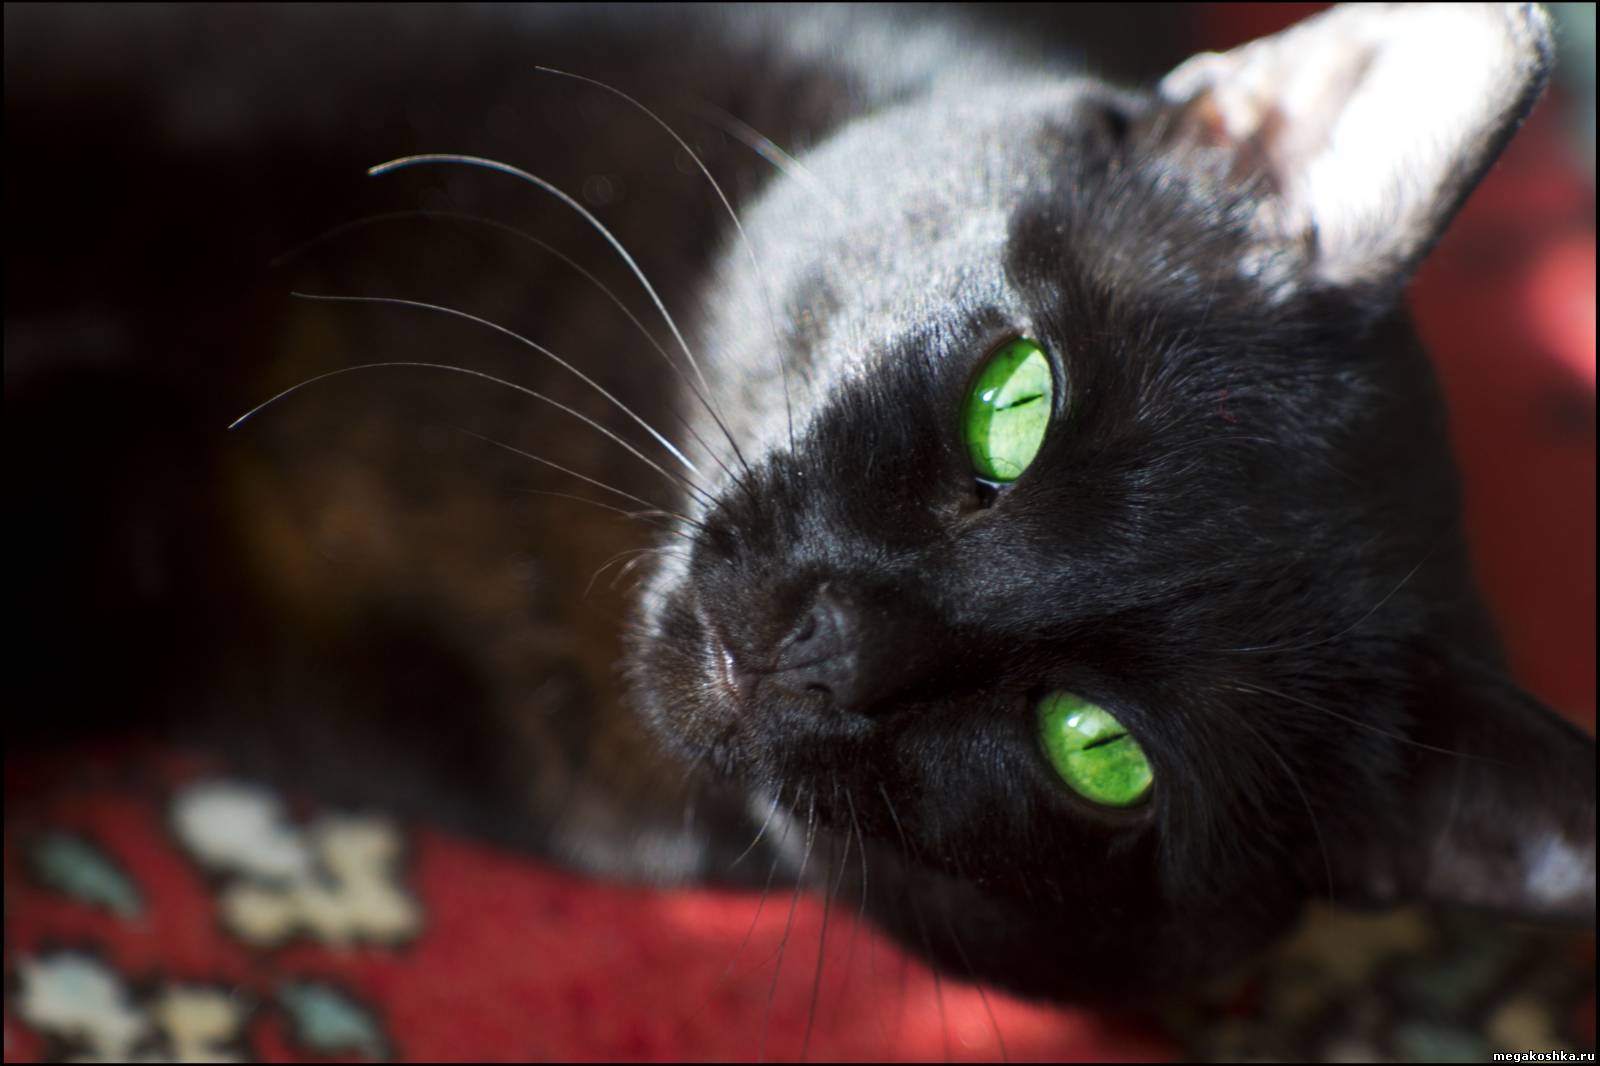 Черный зеленый глазками. Чёрный кот с зелёными глазами. Черная кошка с зелеными глазами. Чёрный котик с зелёными глазами. Кошка с зелеными глазами.